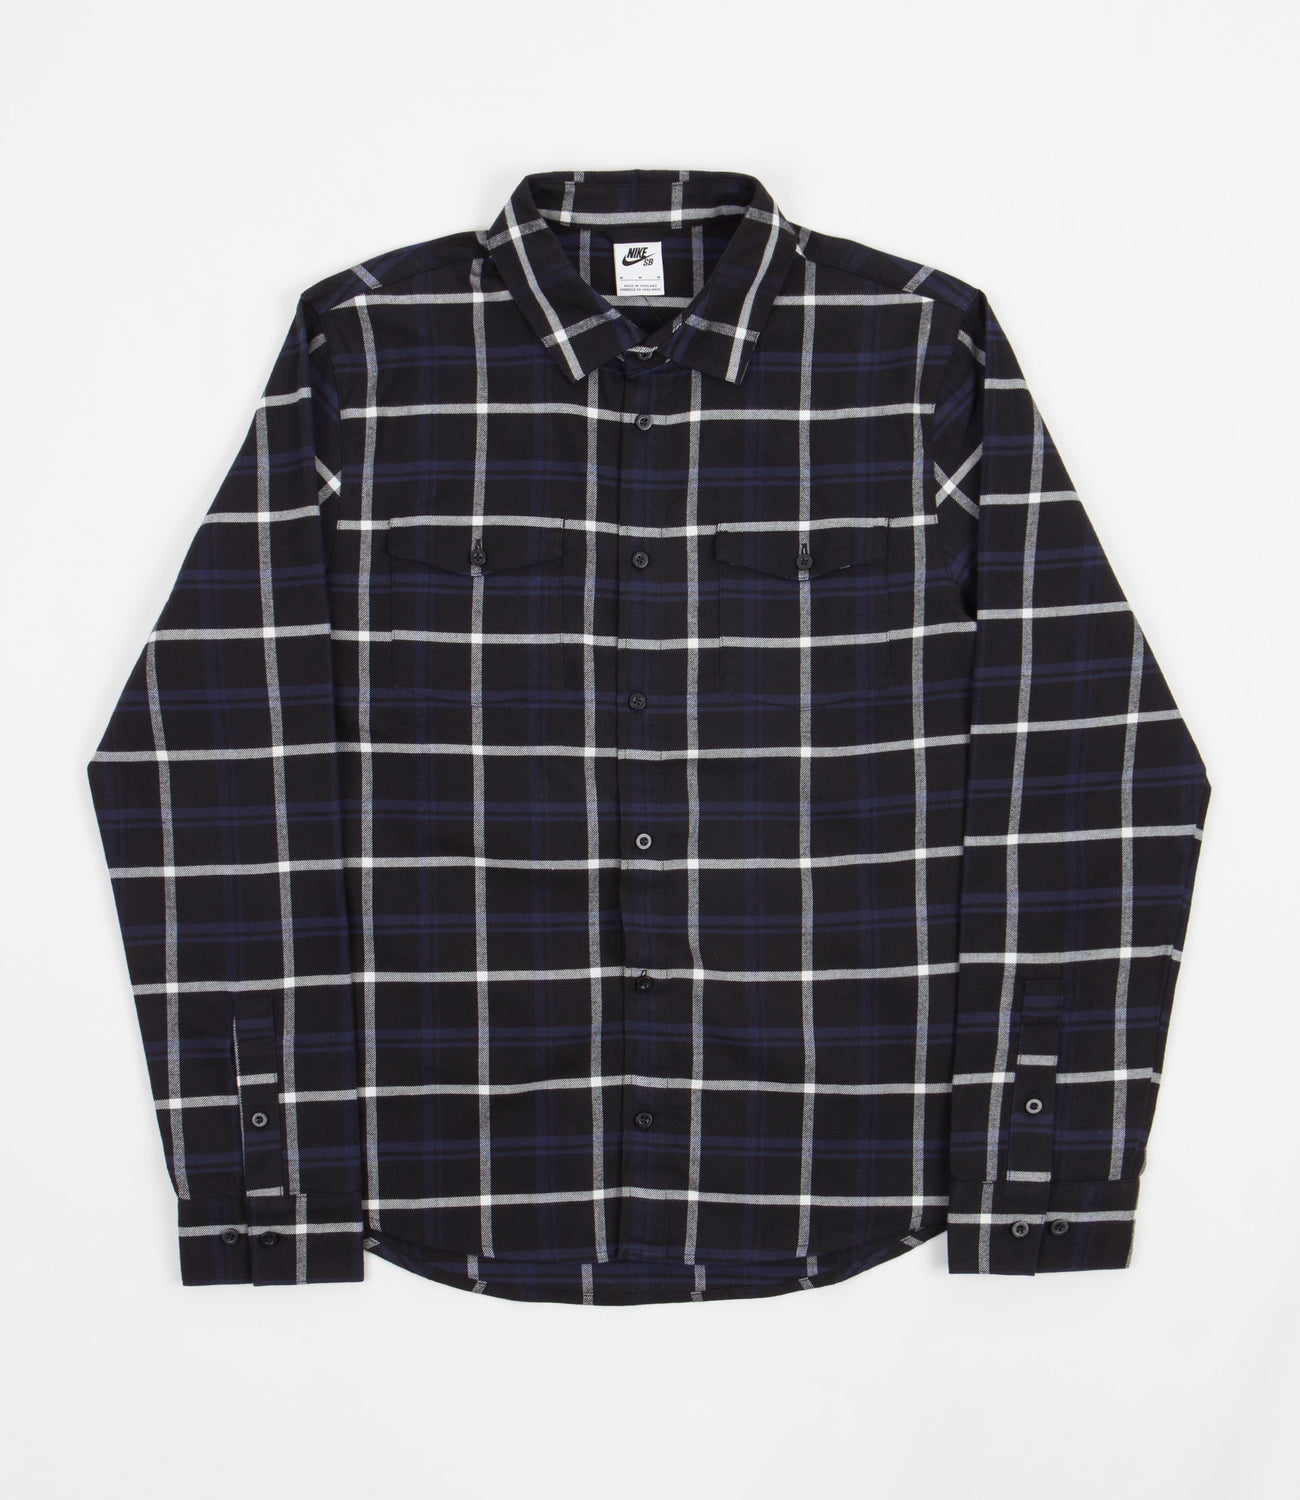 Nike SB Flannel Shirt - Black / White | Flatspot